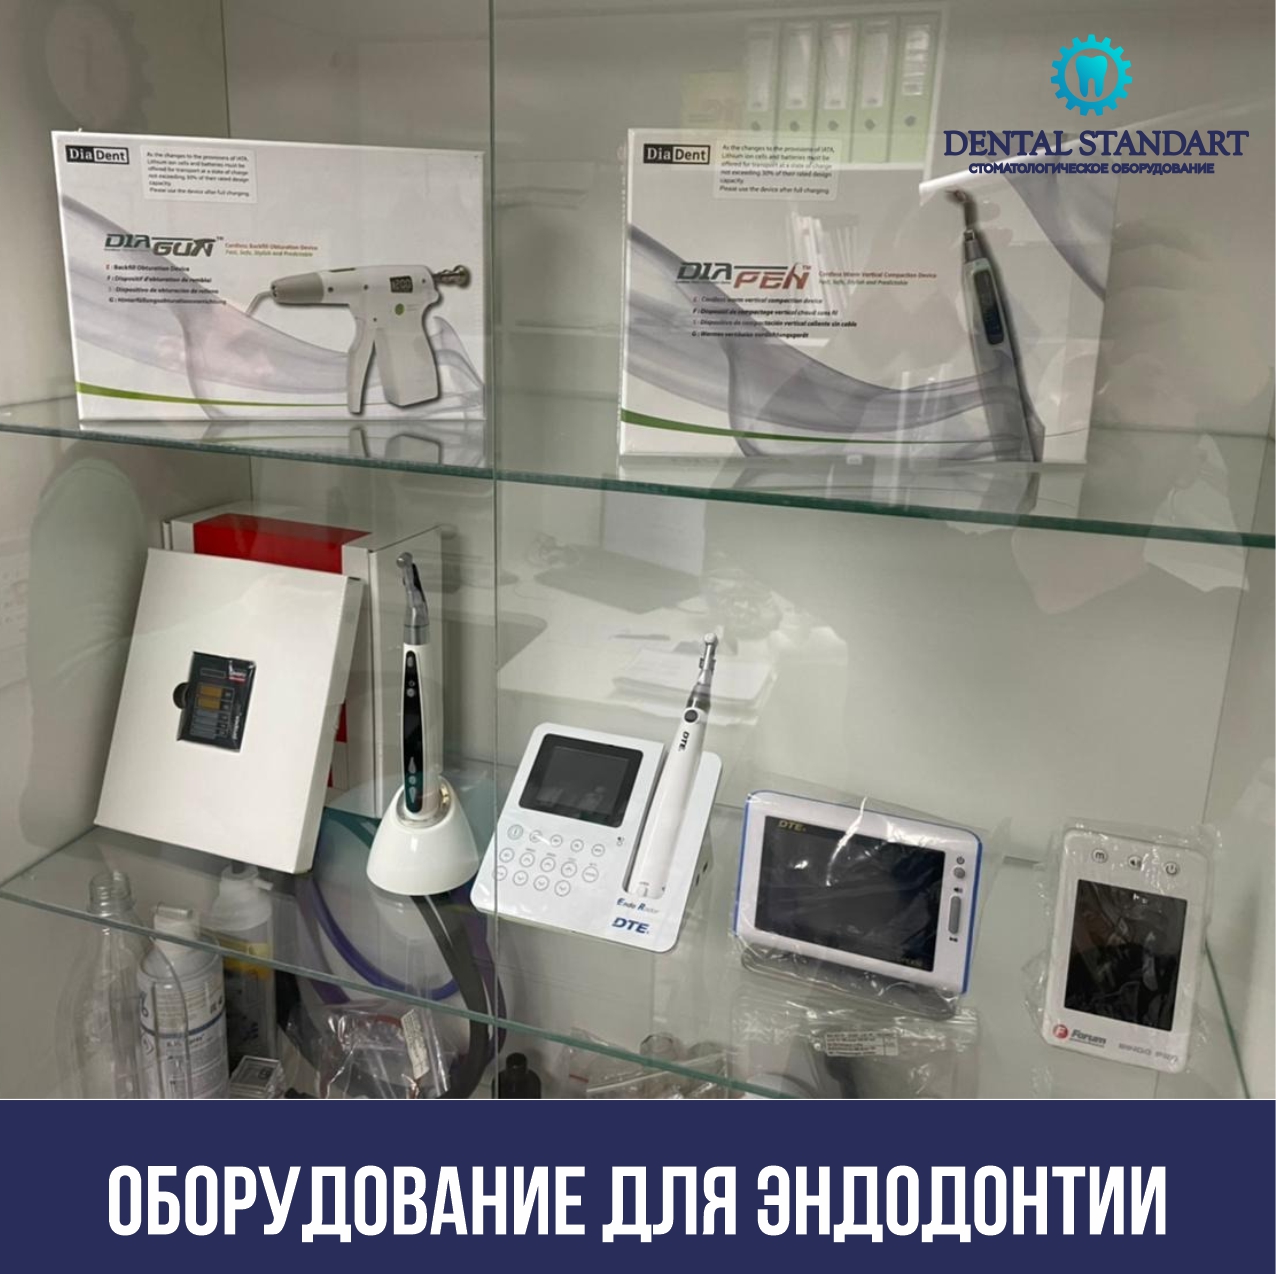 Стоматологическое оборудование в Краснодаре для эндодонтии.